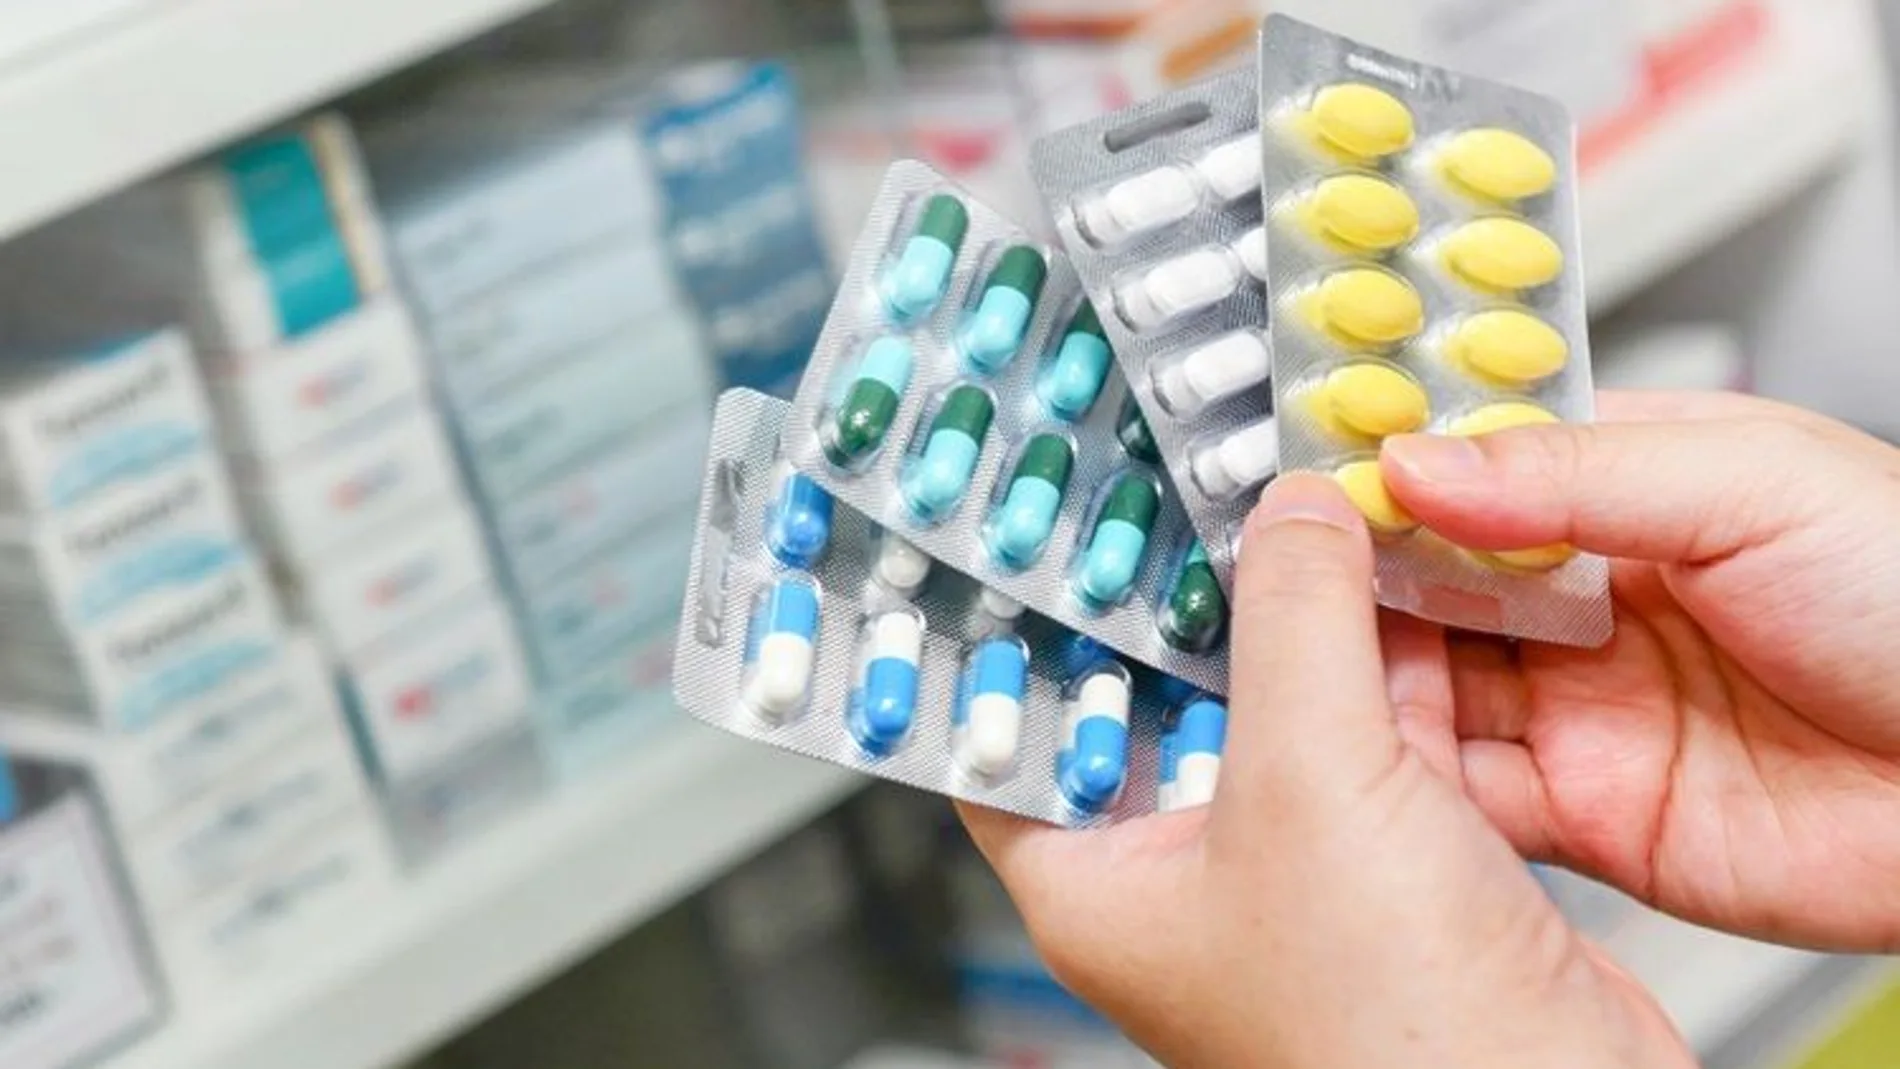 Sanidad avisa de “interacción potencialmente mortal” al mezclar estos medicamentos